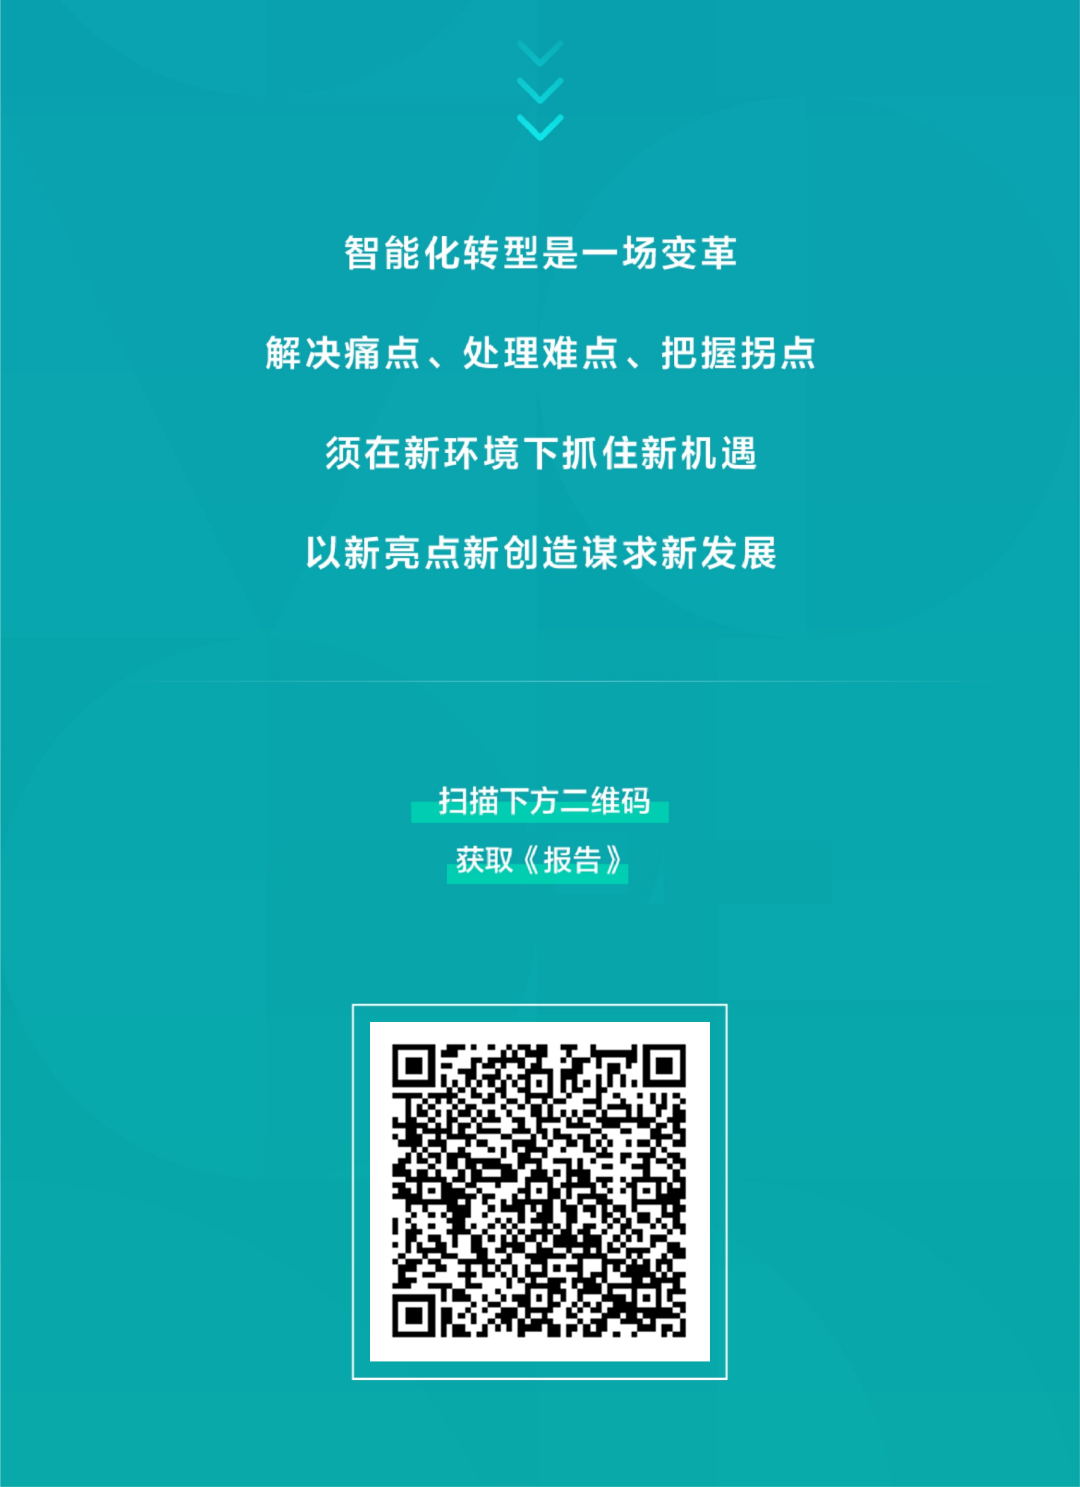 一图读懂《中国企业智能化成熟度报告（2022）》